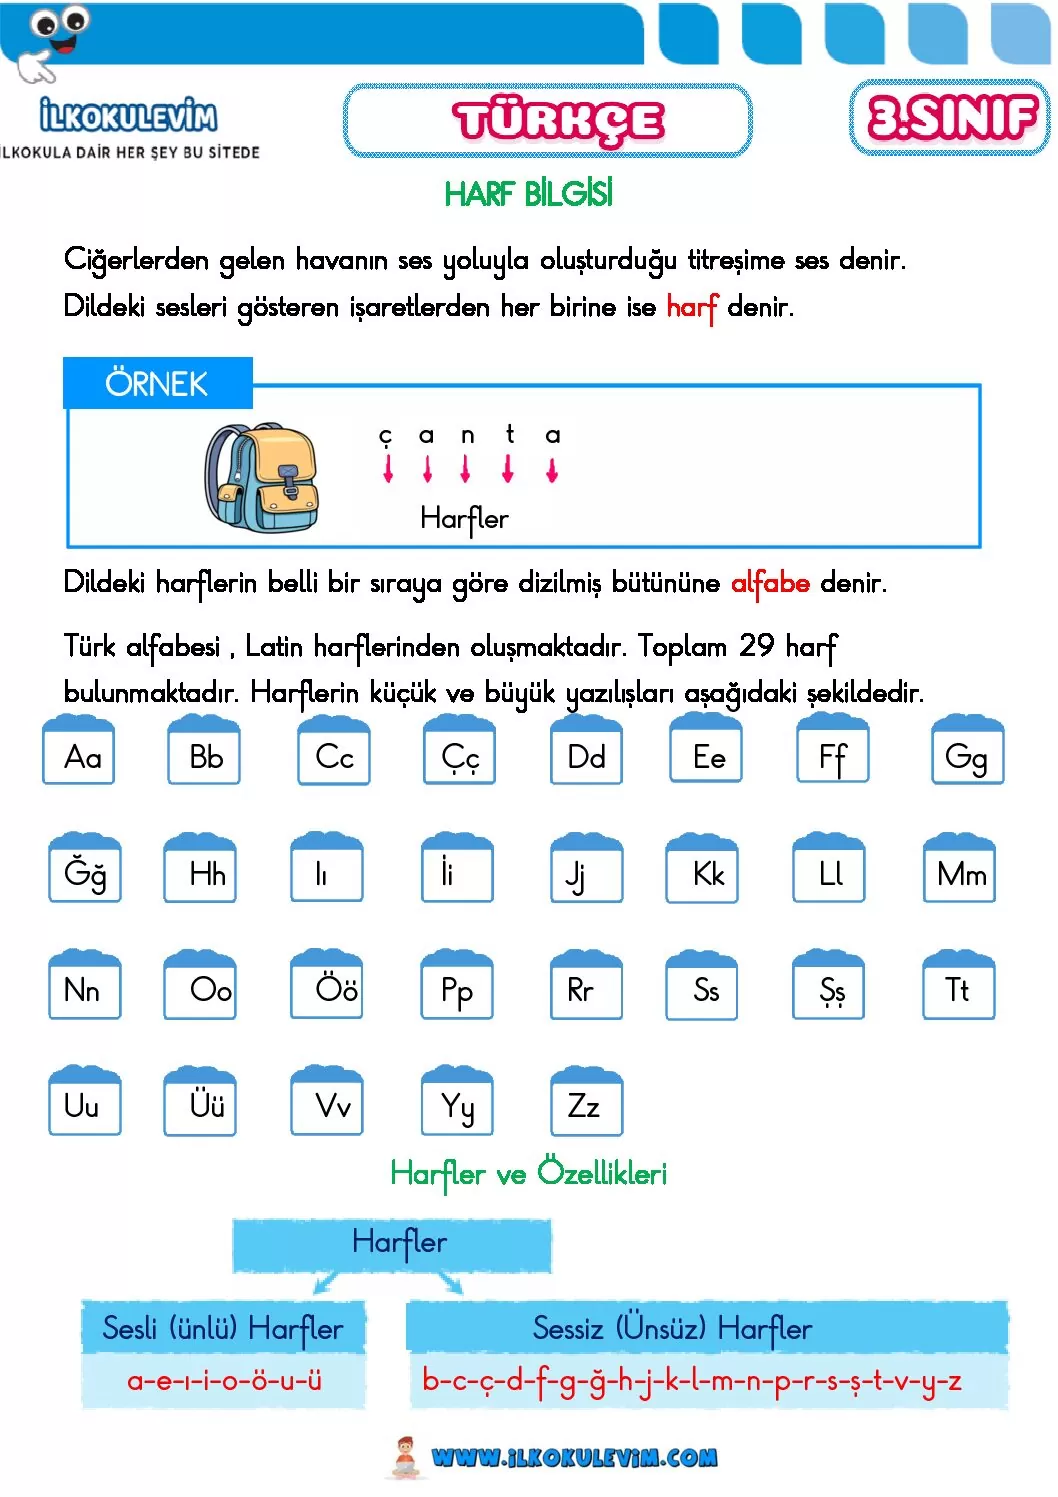 3 sinif turkce harf bilgisi etkinligi 1 pdf